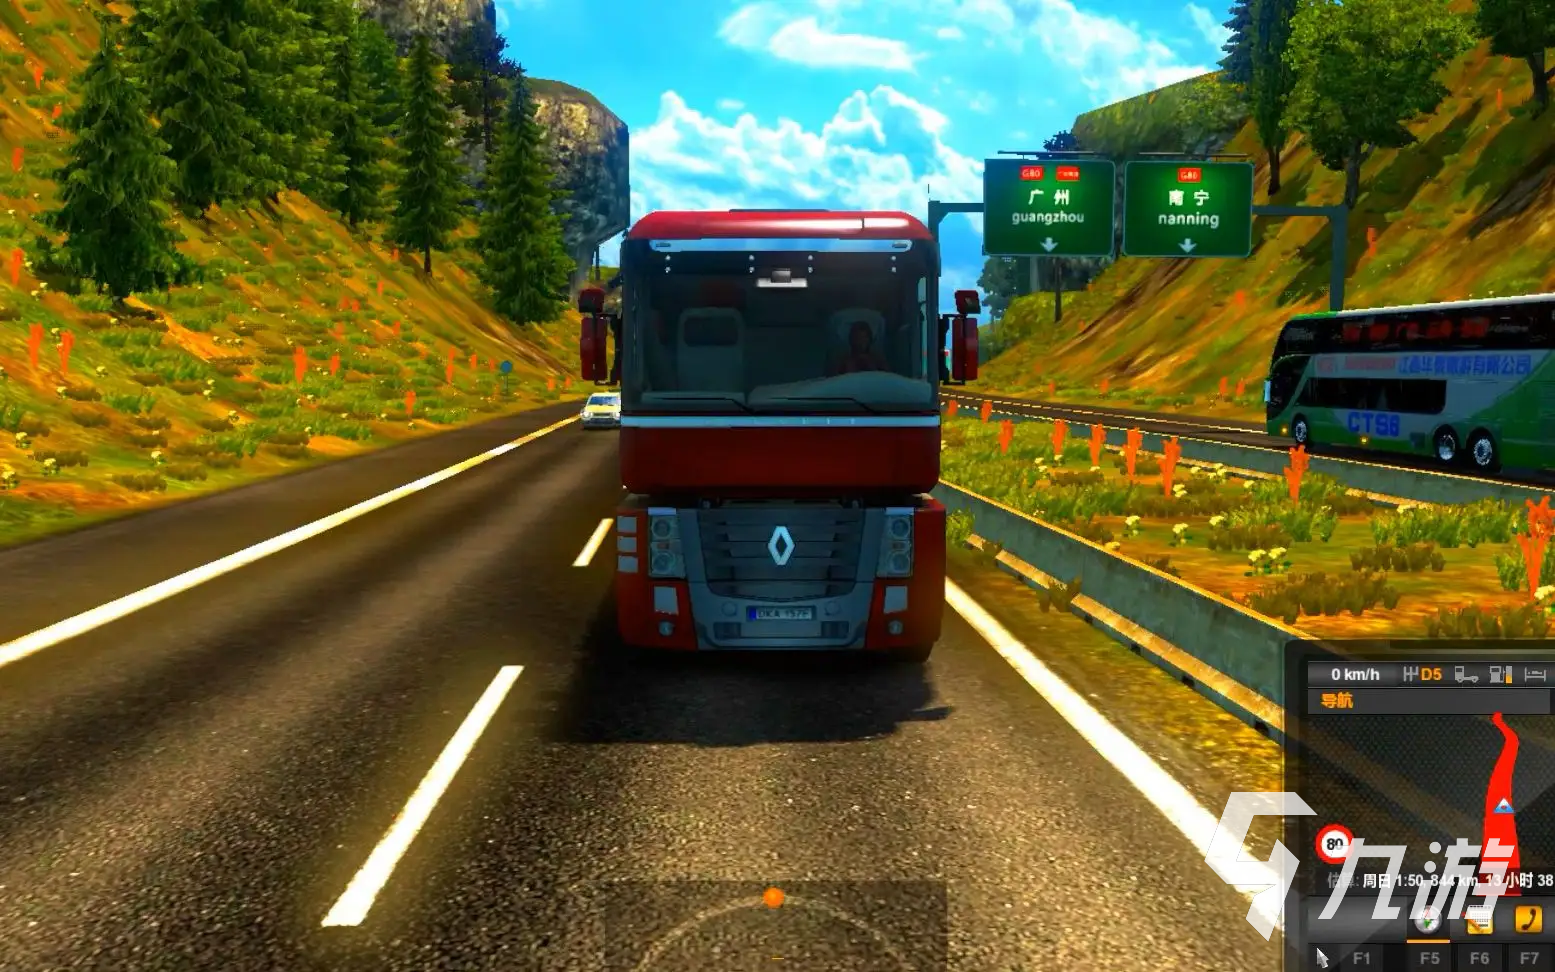 2022开车模拟驾驶游戏下载有哪些 开车模拟驾驶游戏推荐